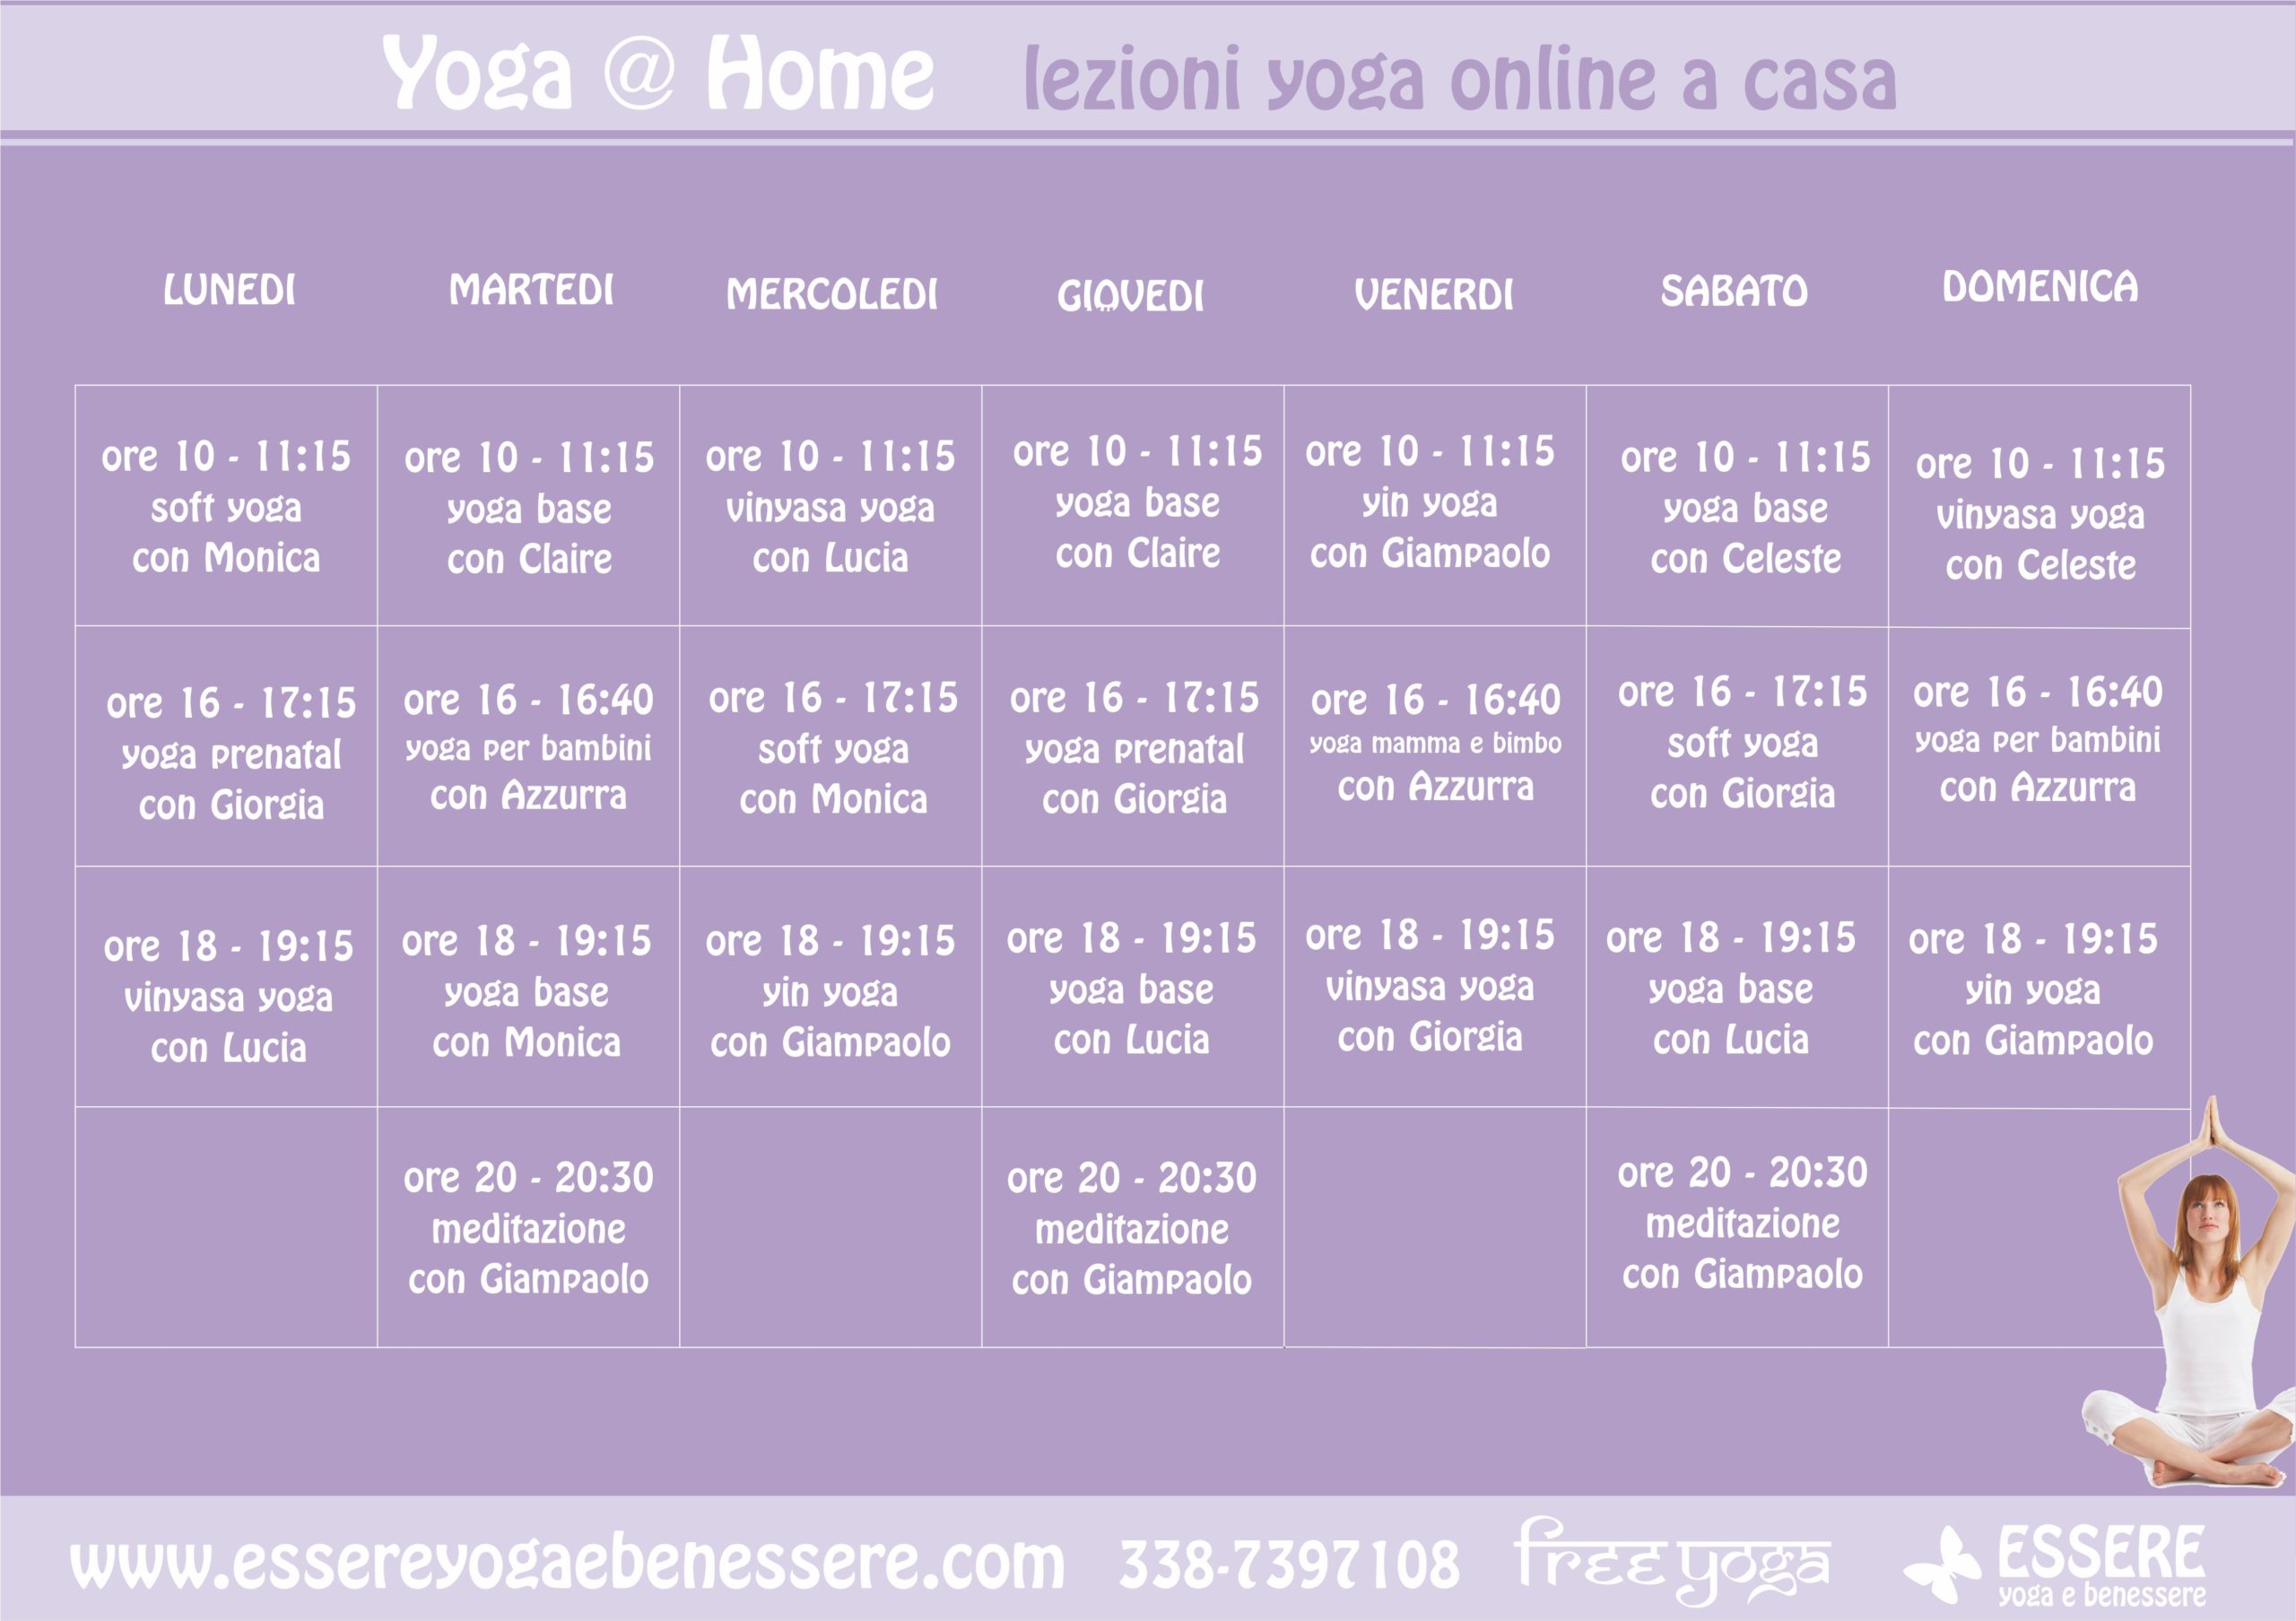 lezioni-yoga-online-casa-yoga-@-home-essere-benessere-alassio-free-gratuito-insegno-lucia ragazzi-orario